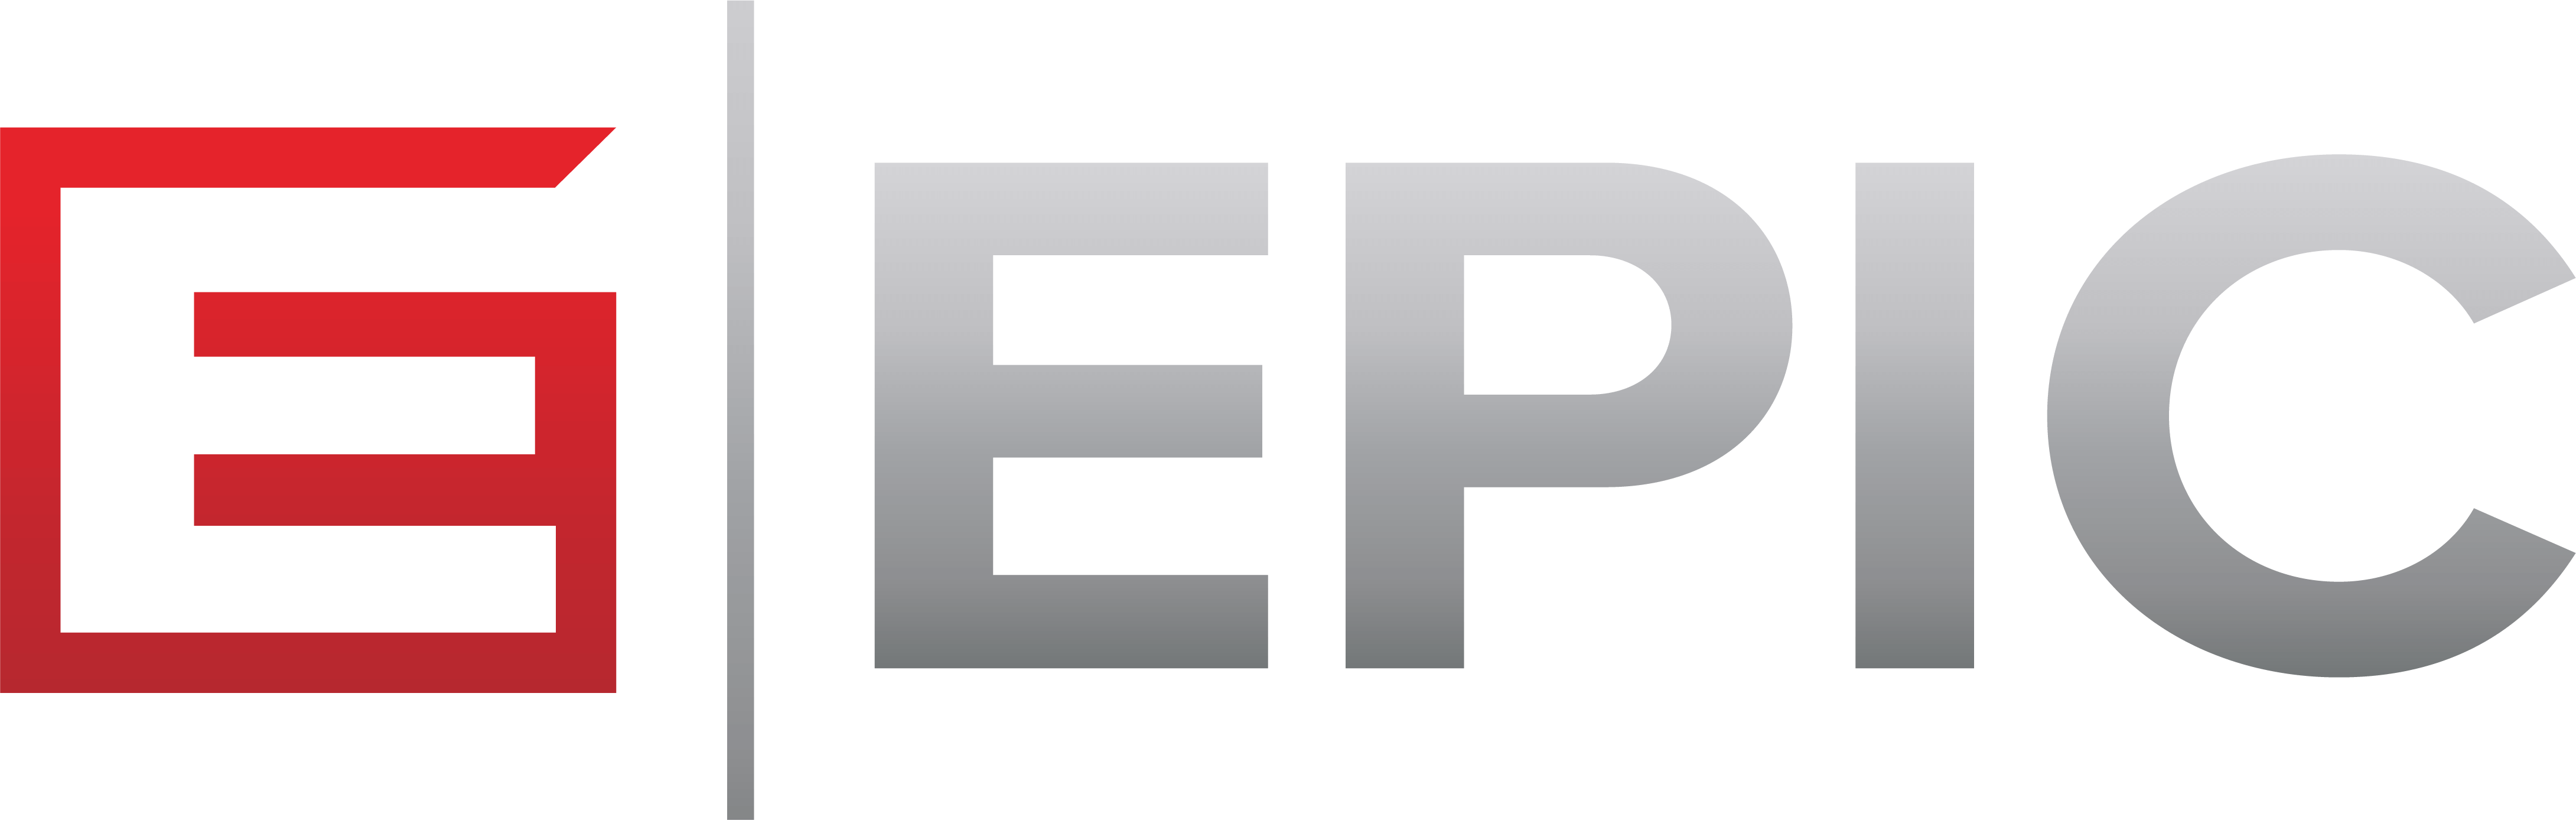 EPIC_ProximaBold-Jeff-Roman